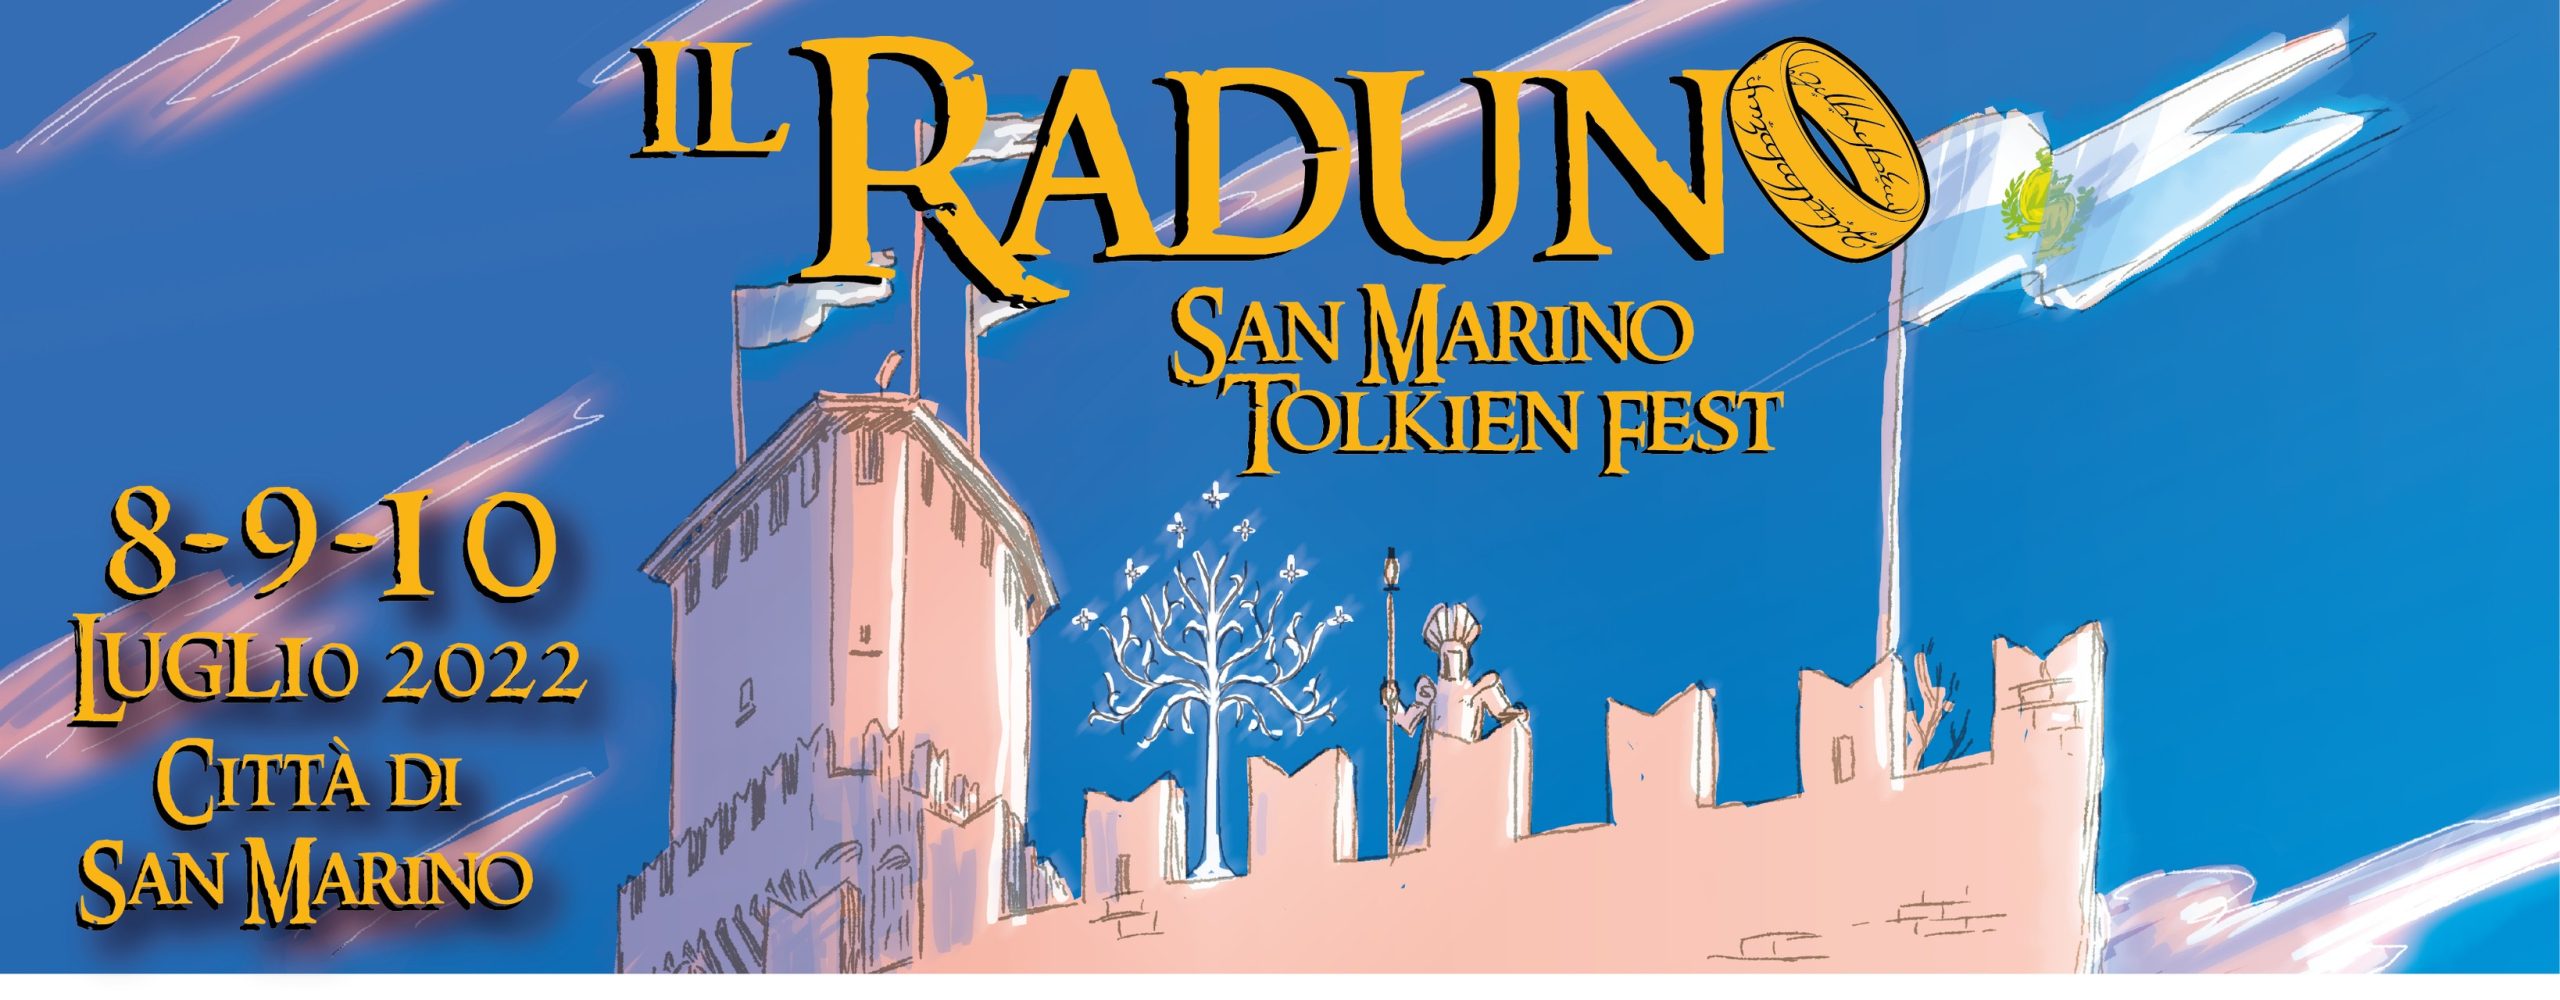 Il Raduno – San Marino Tolkien Fest: dall’8 al 10 luglio 2022